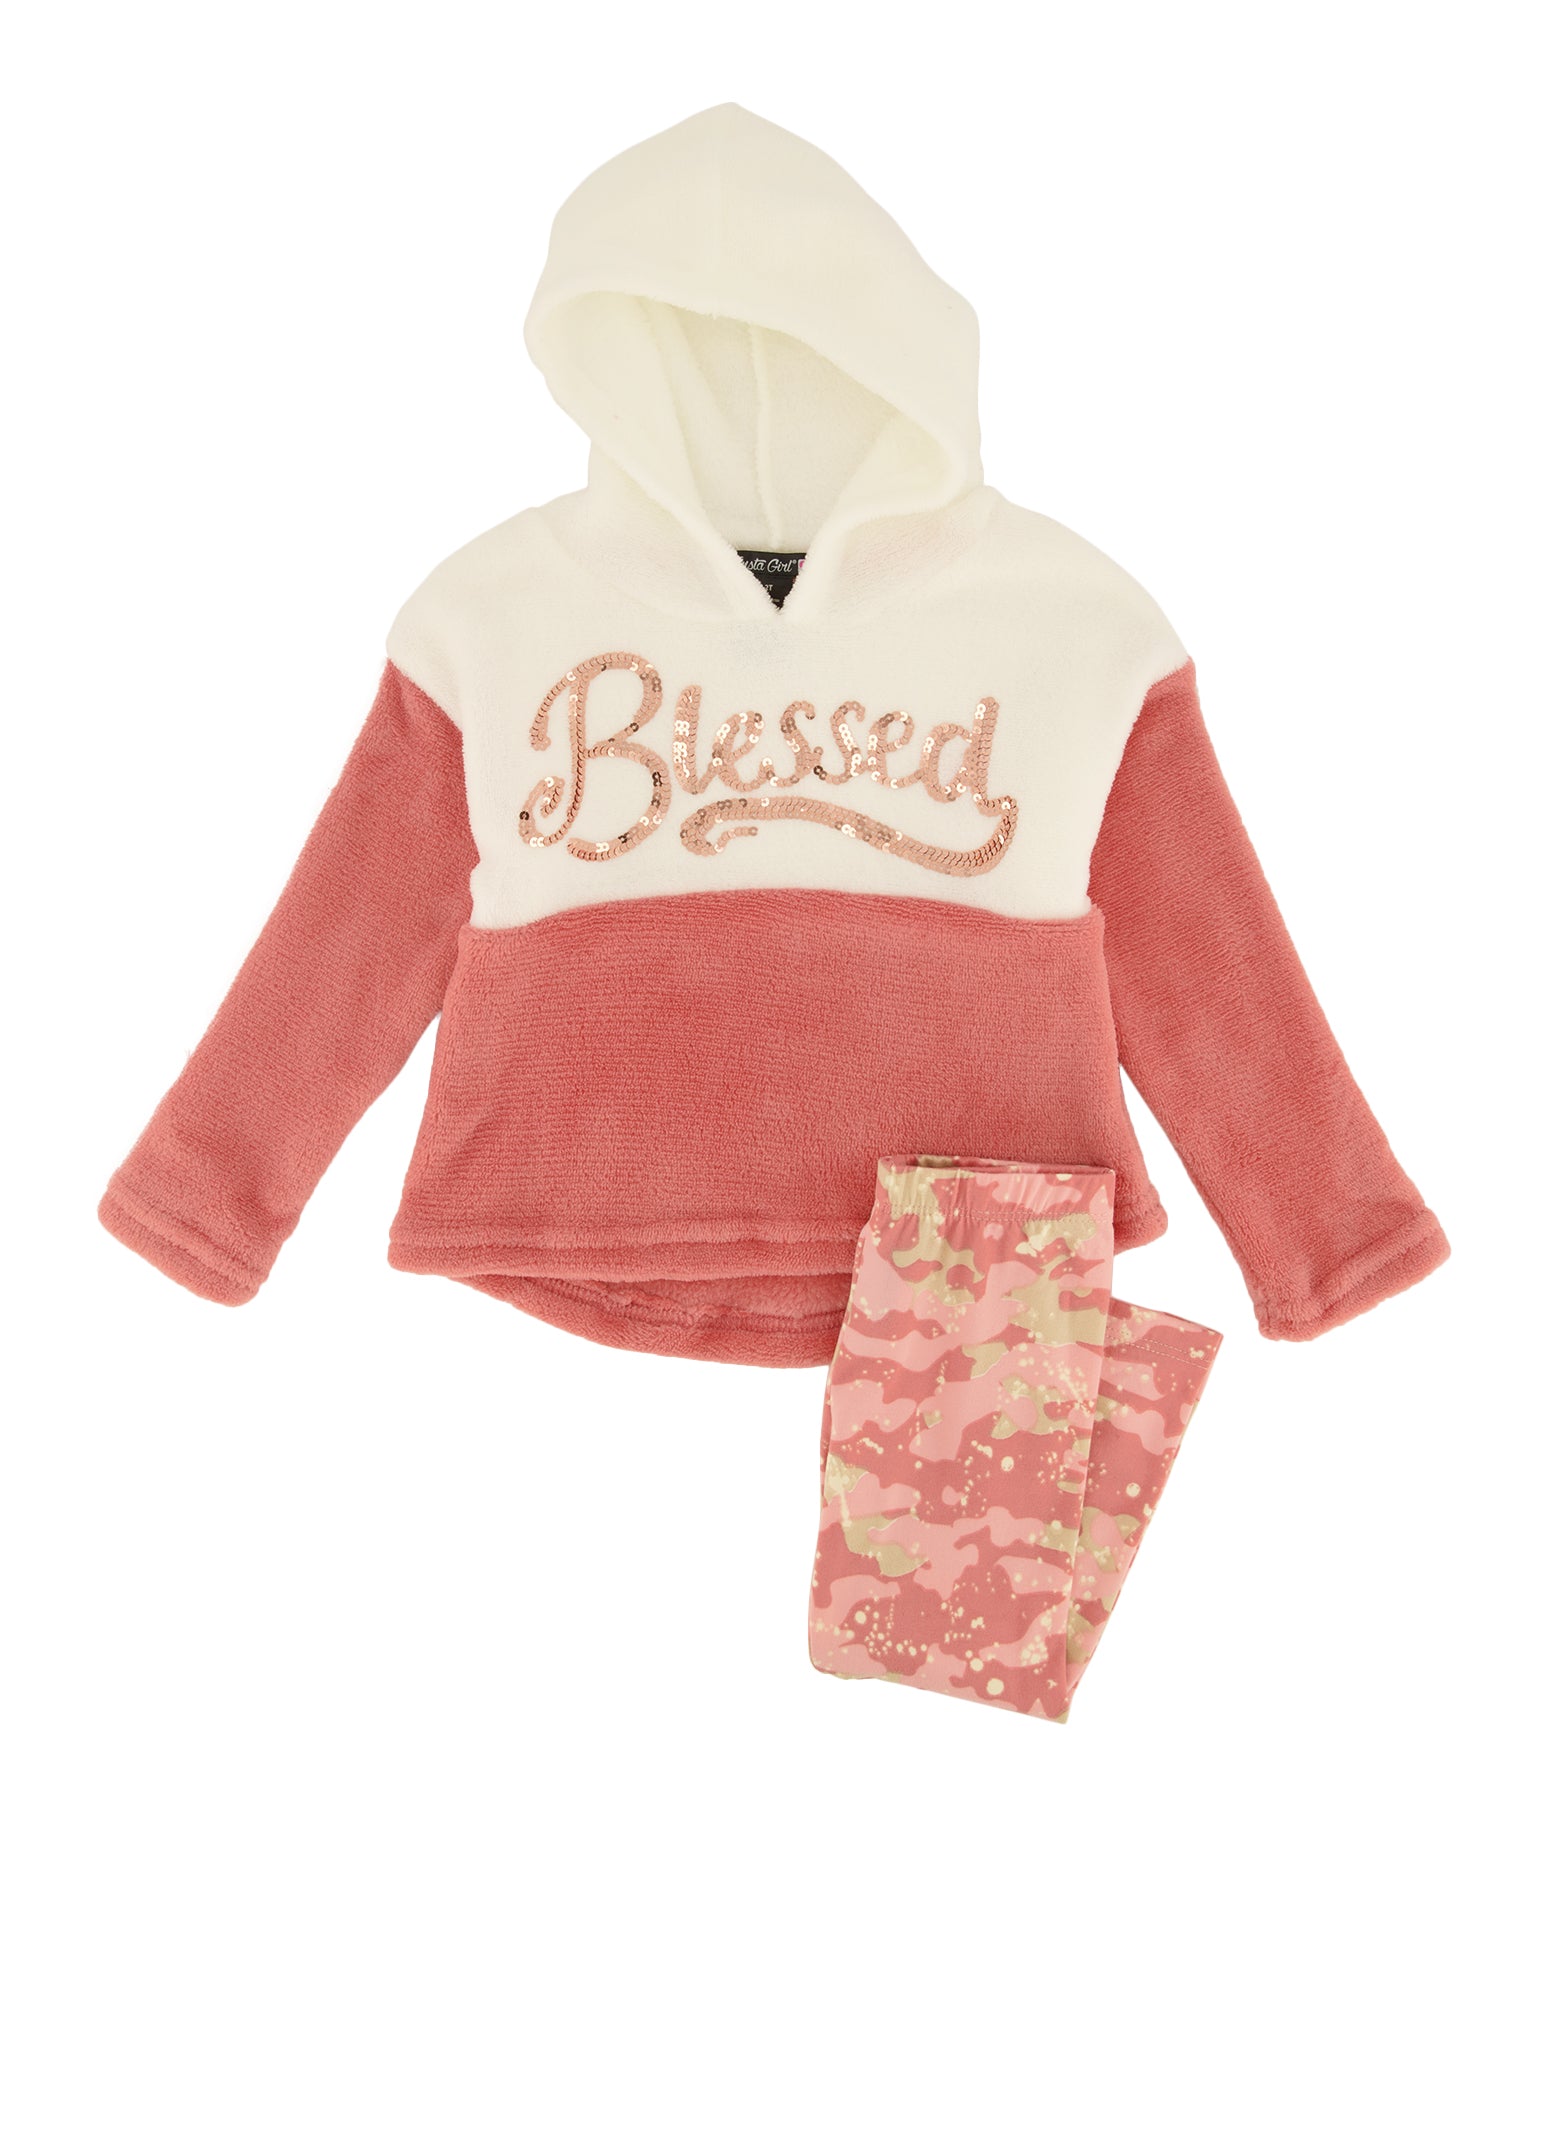 Kids Squash Blossom necklace – Boho & Jangles Boutique